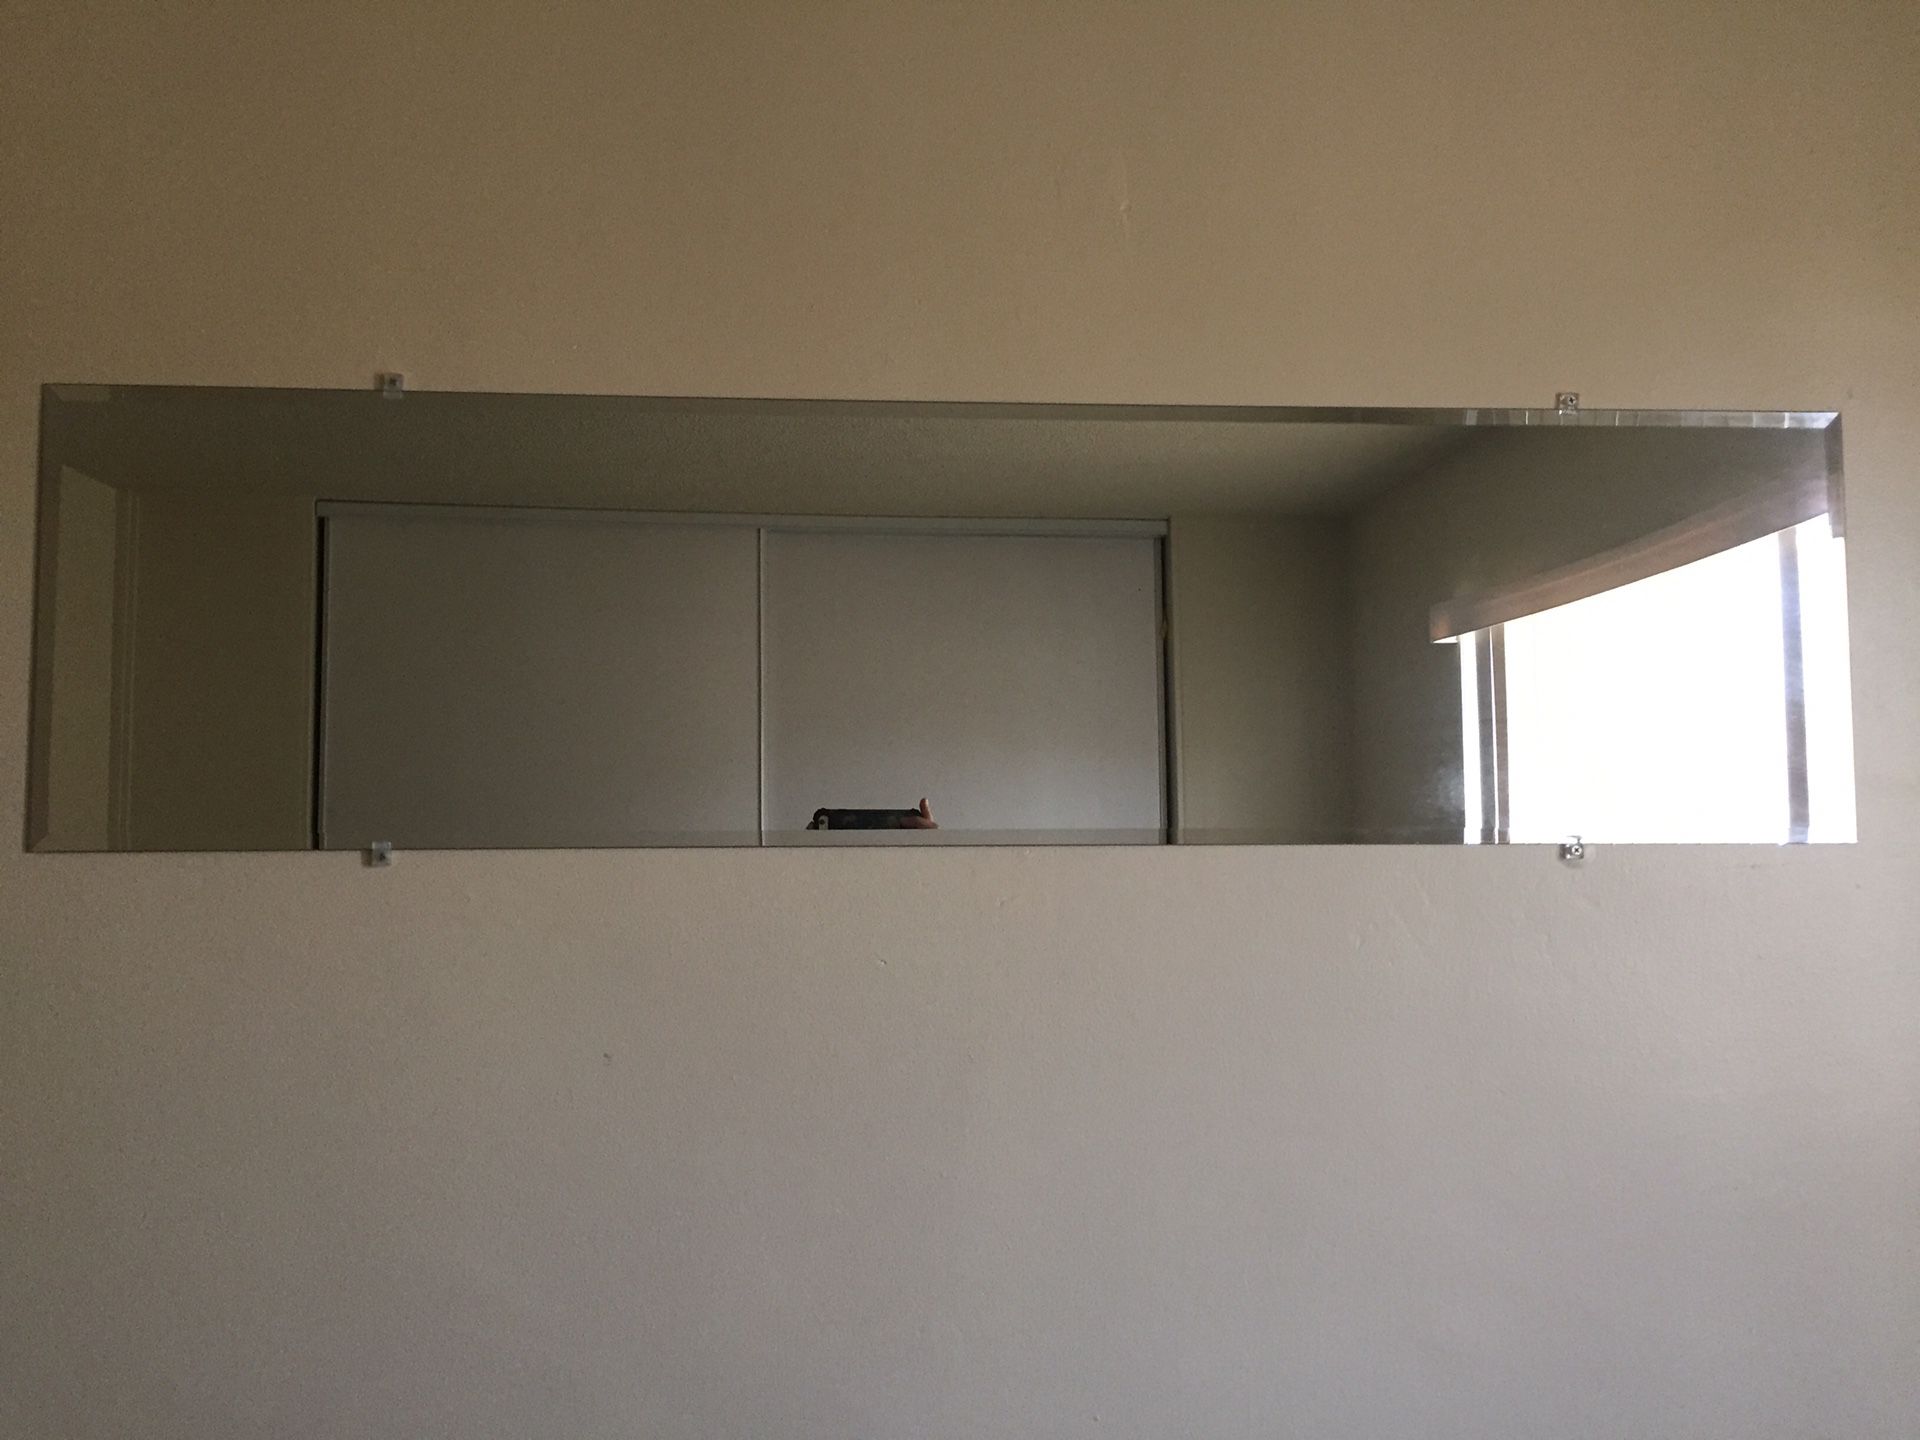 Large rectangular wall mirror